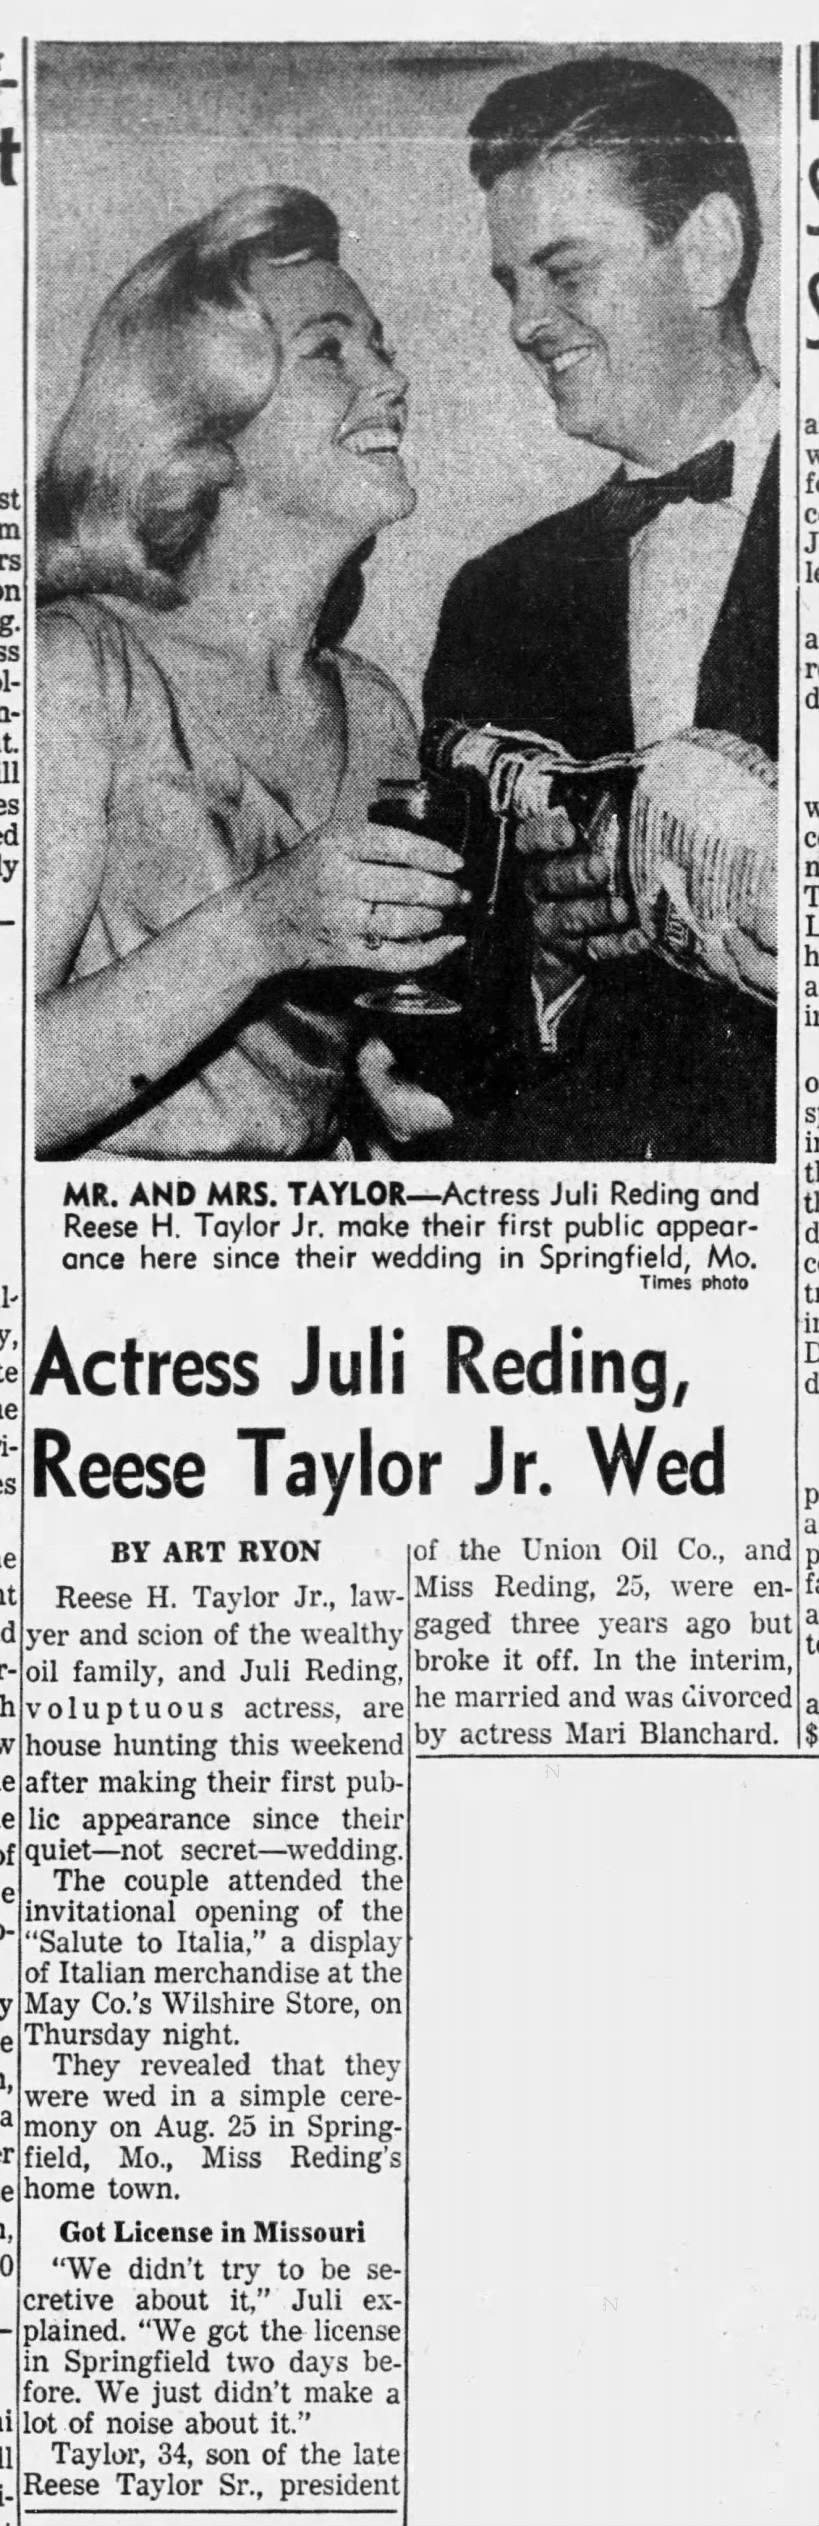 Actress Juli Reding, Reese Taylor Jr.  Wed/Art Ryon